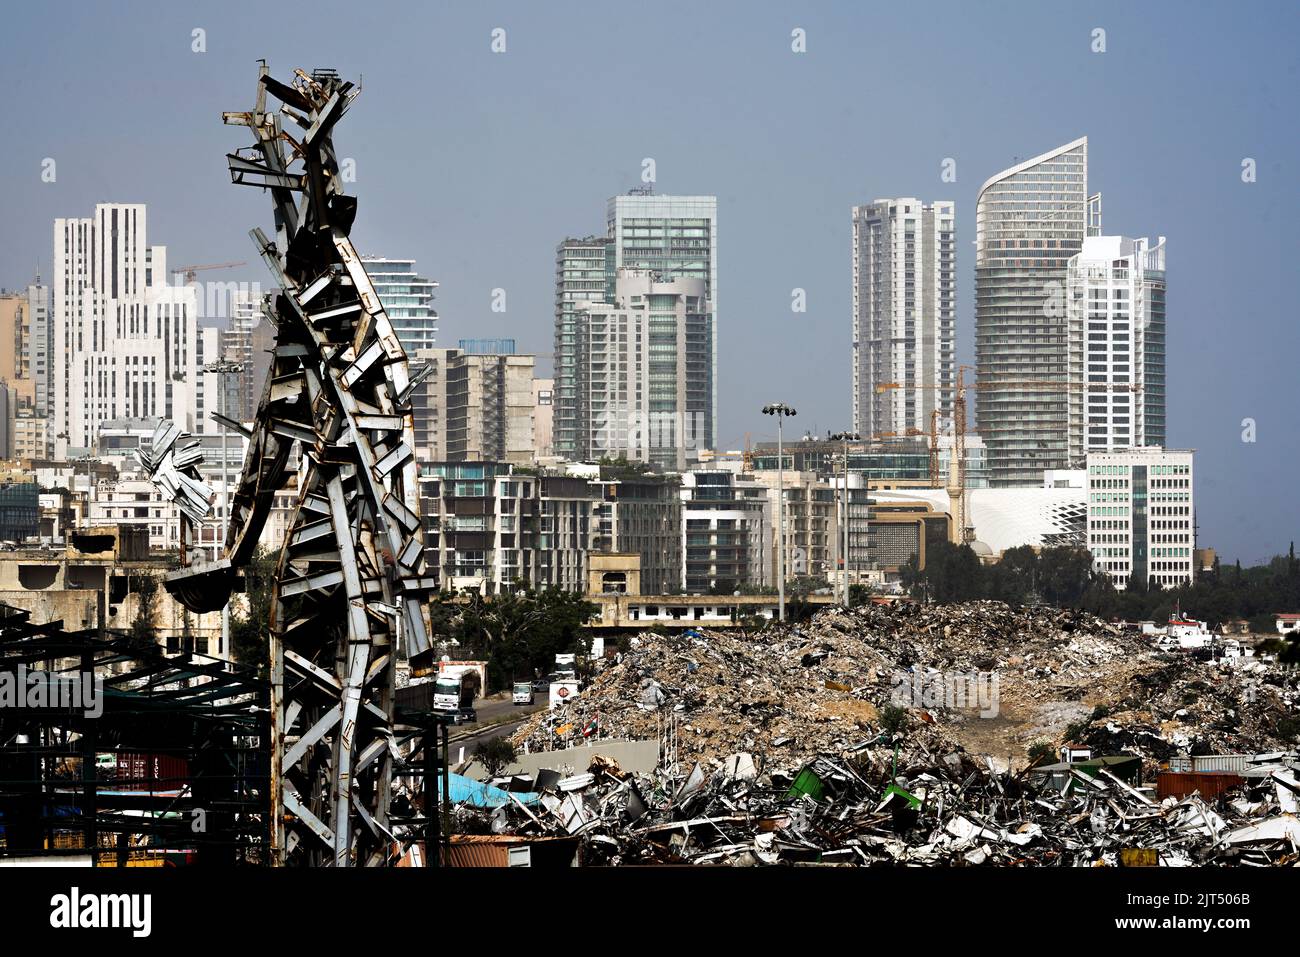 Beirut, Líbano: Contra el horizonte de la ciudad moderna se levanta la escultura de acero del artista Nadim Karam, que conmemora a las víctimas de la mortal explosión 8/4/2020, hecha de chatarra de la explosión masiva de 2.750 toneladas de nitrato de amonio almacenadas en el puerto. Foto de stock